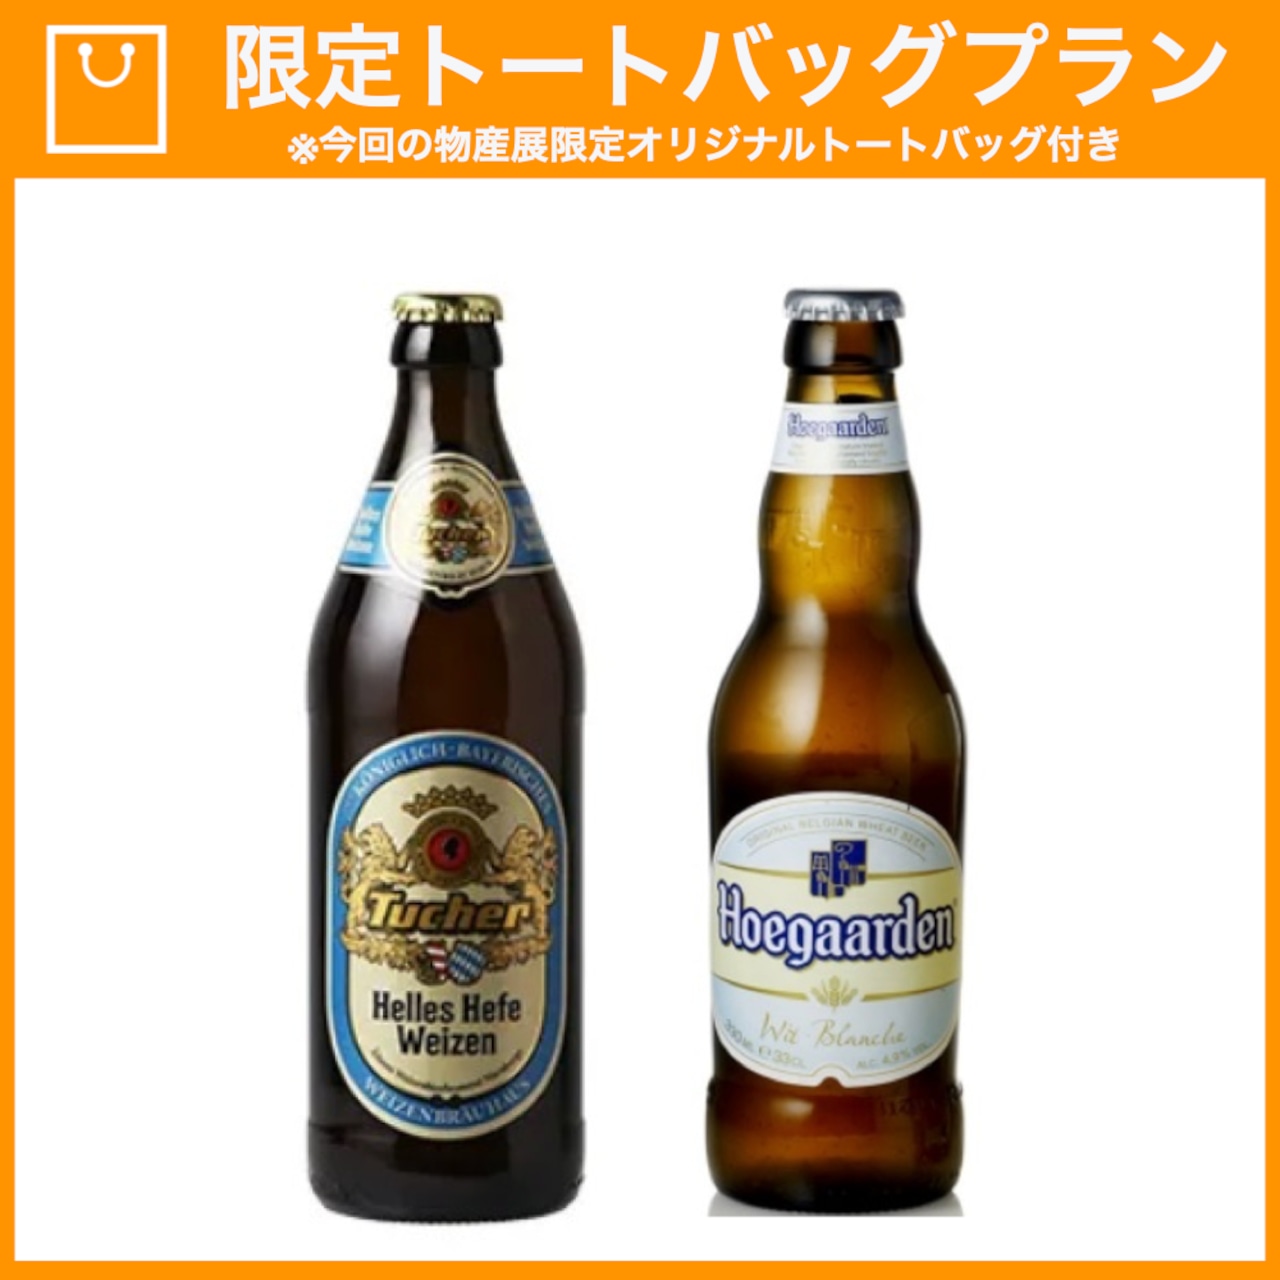 【特典つき】欧州小麦ビール2種と選べるおつまみセット